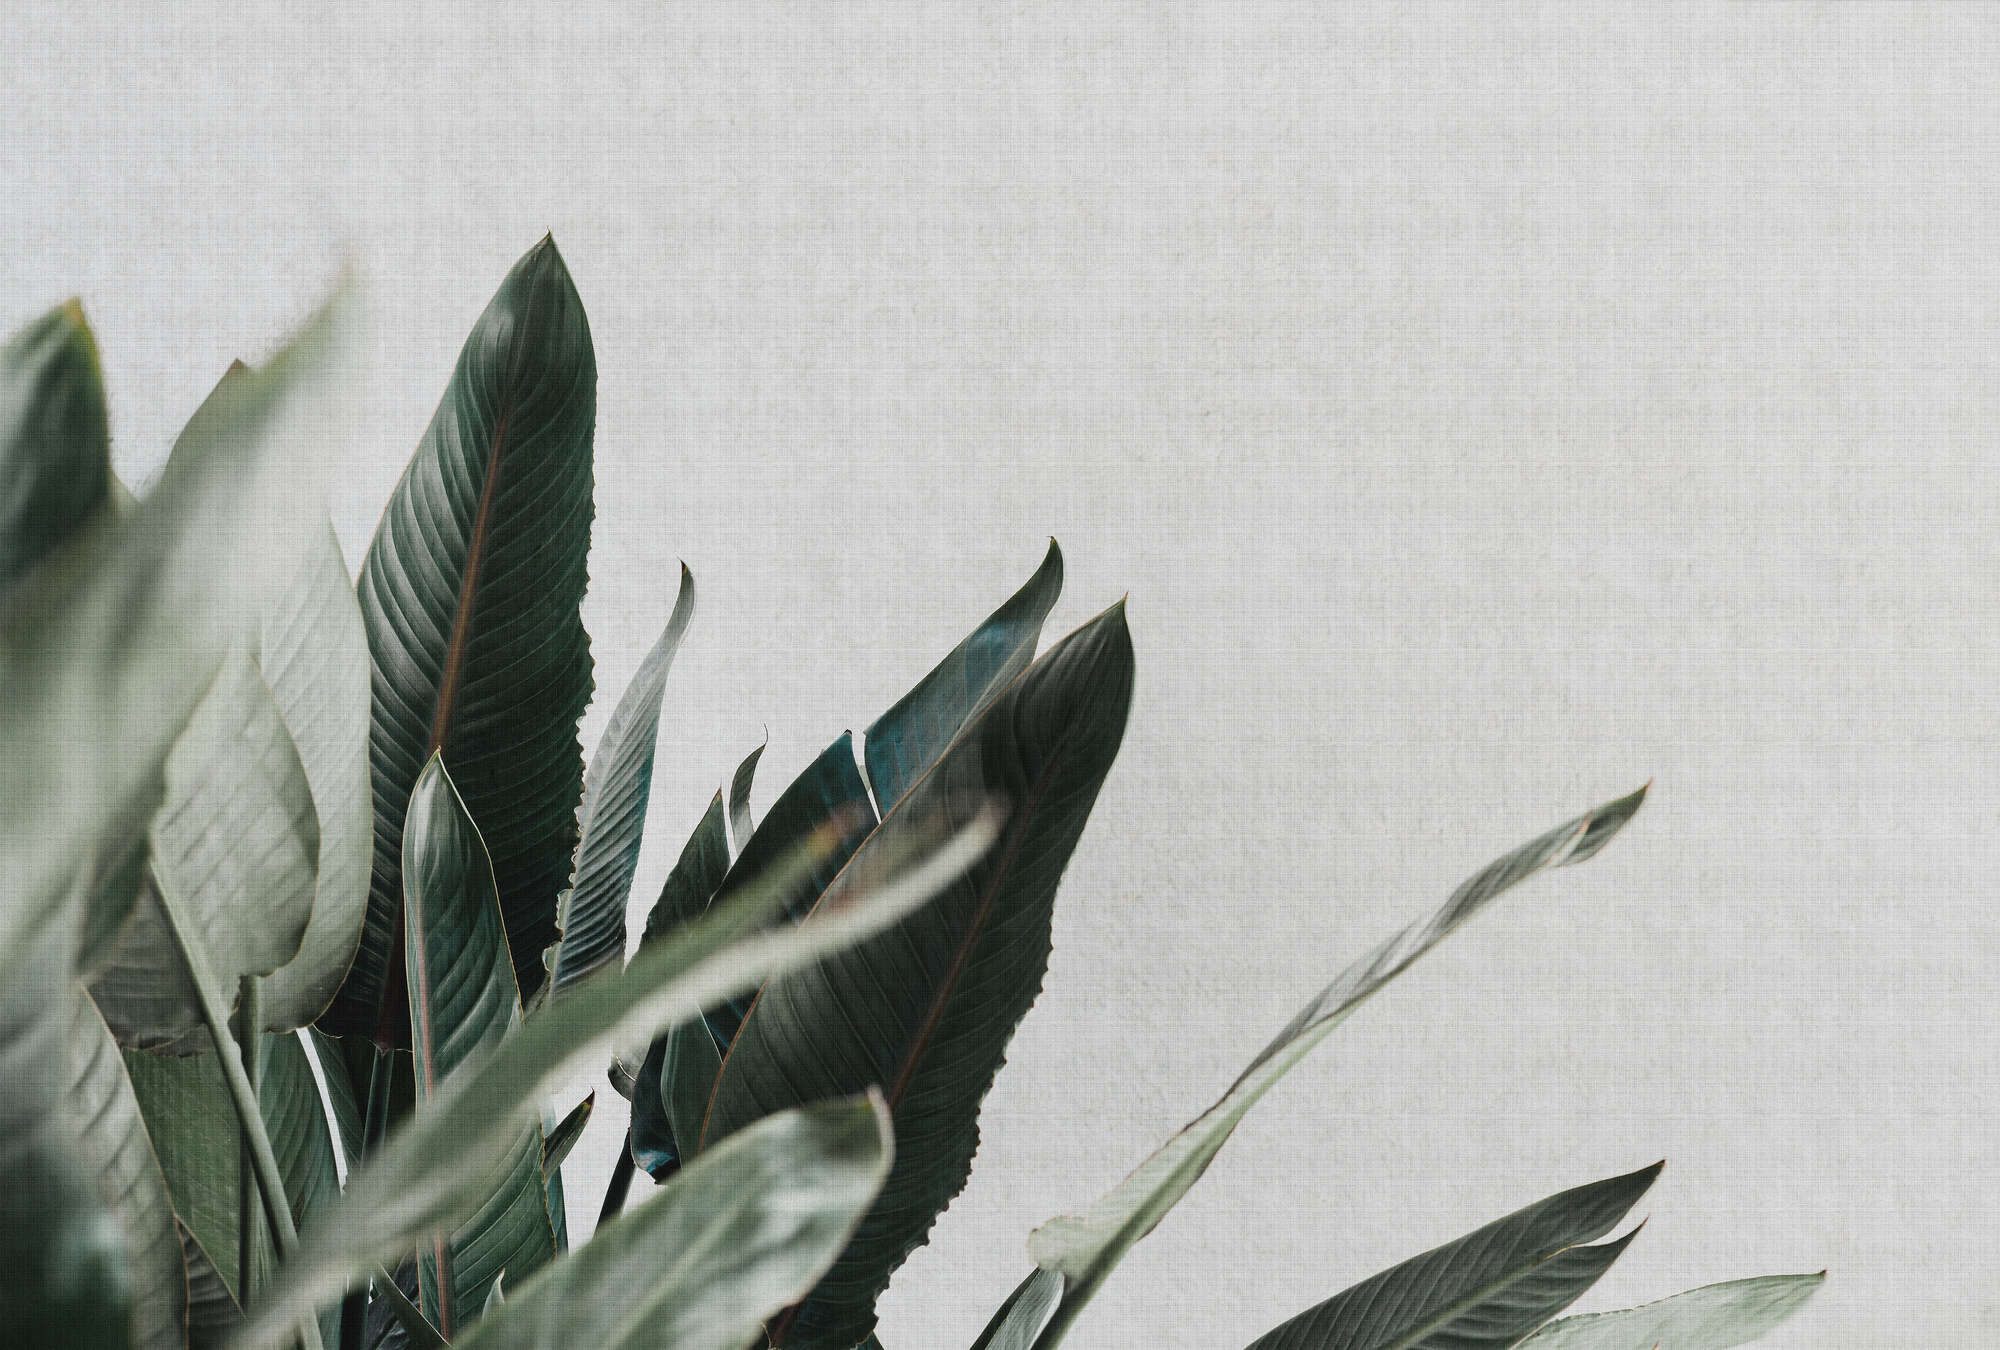             Urban jungle 1 - Digital behang met palmbladeren in natuurlijke linnenstructuur - Grijs, Groen | Premium smooth fleece
        